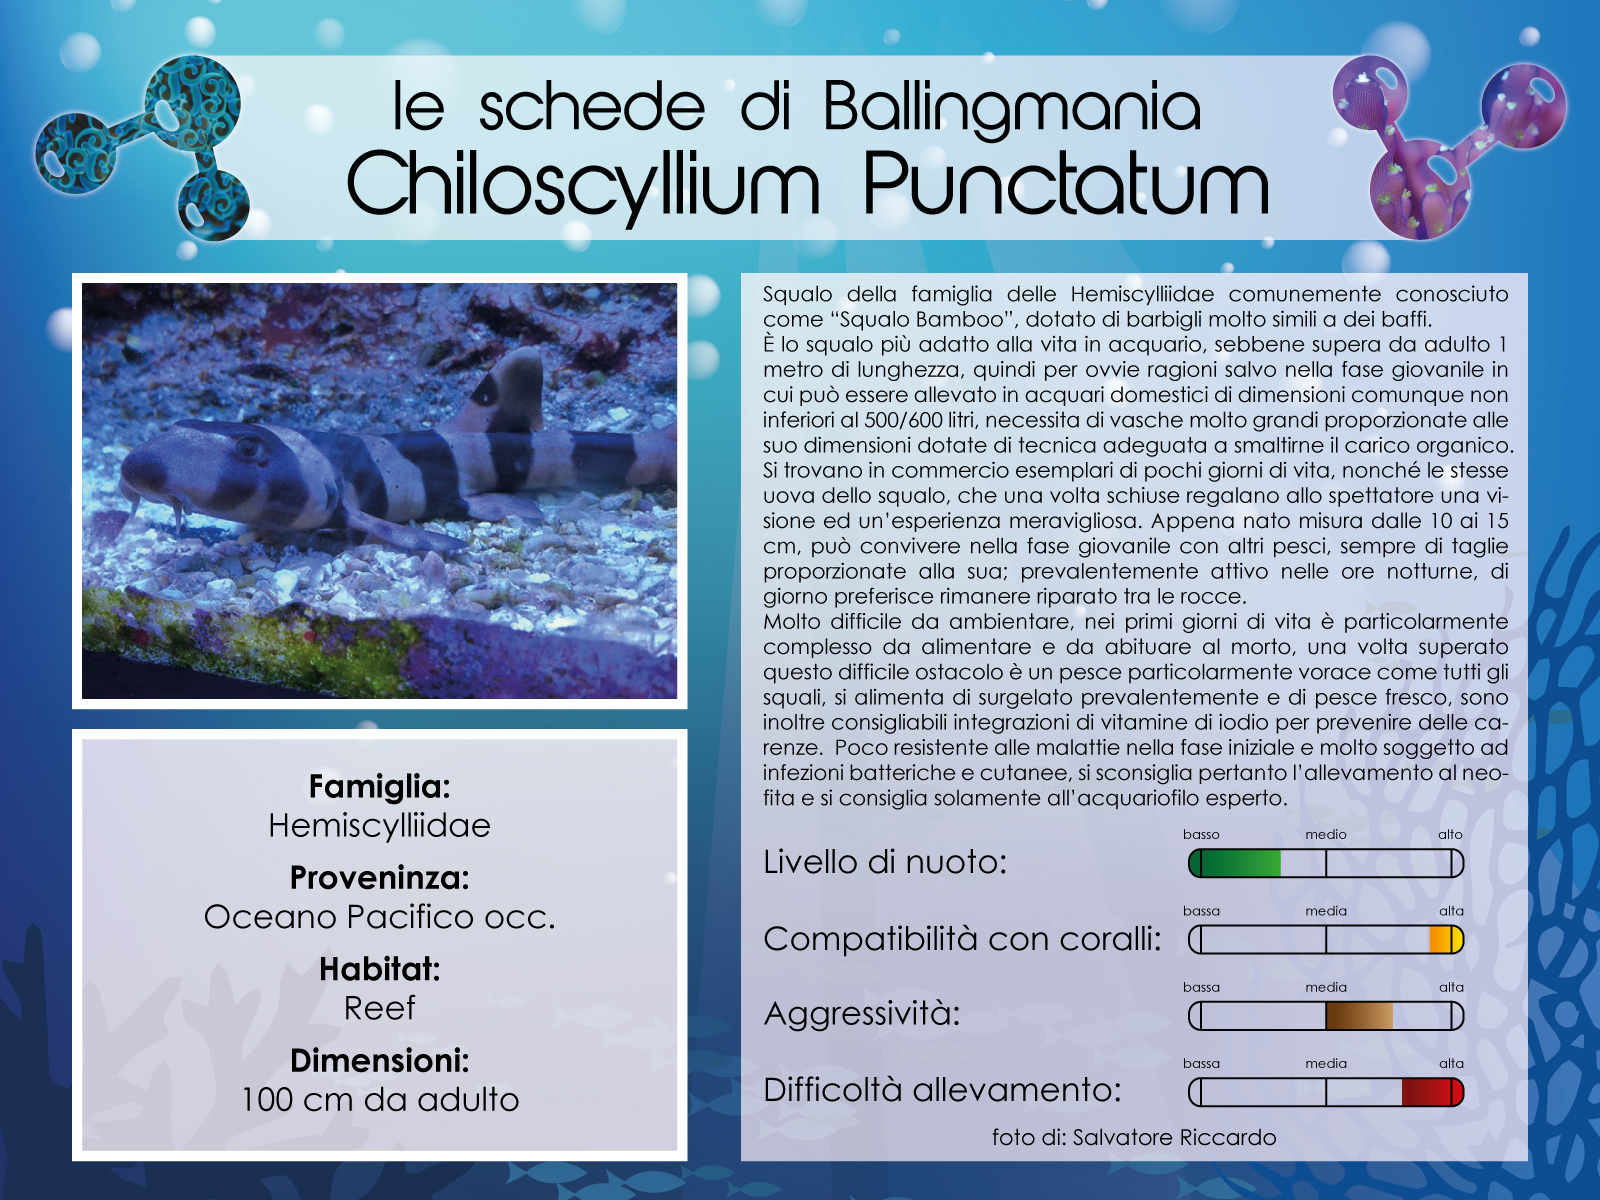 Chiloscyllium Punctatum